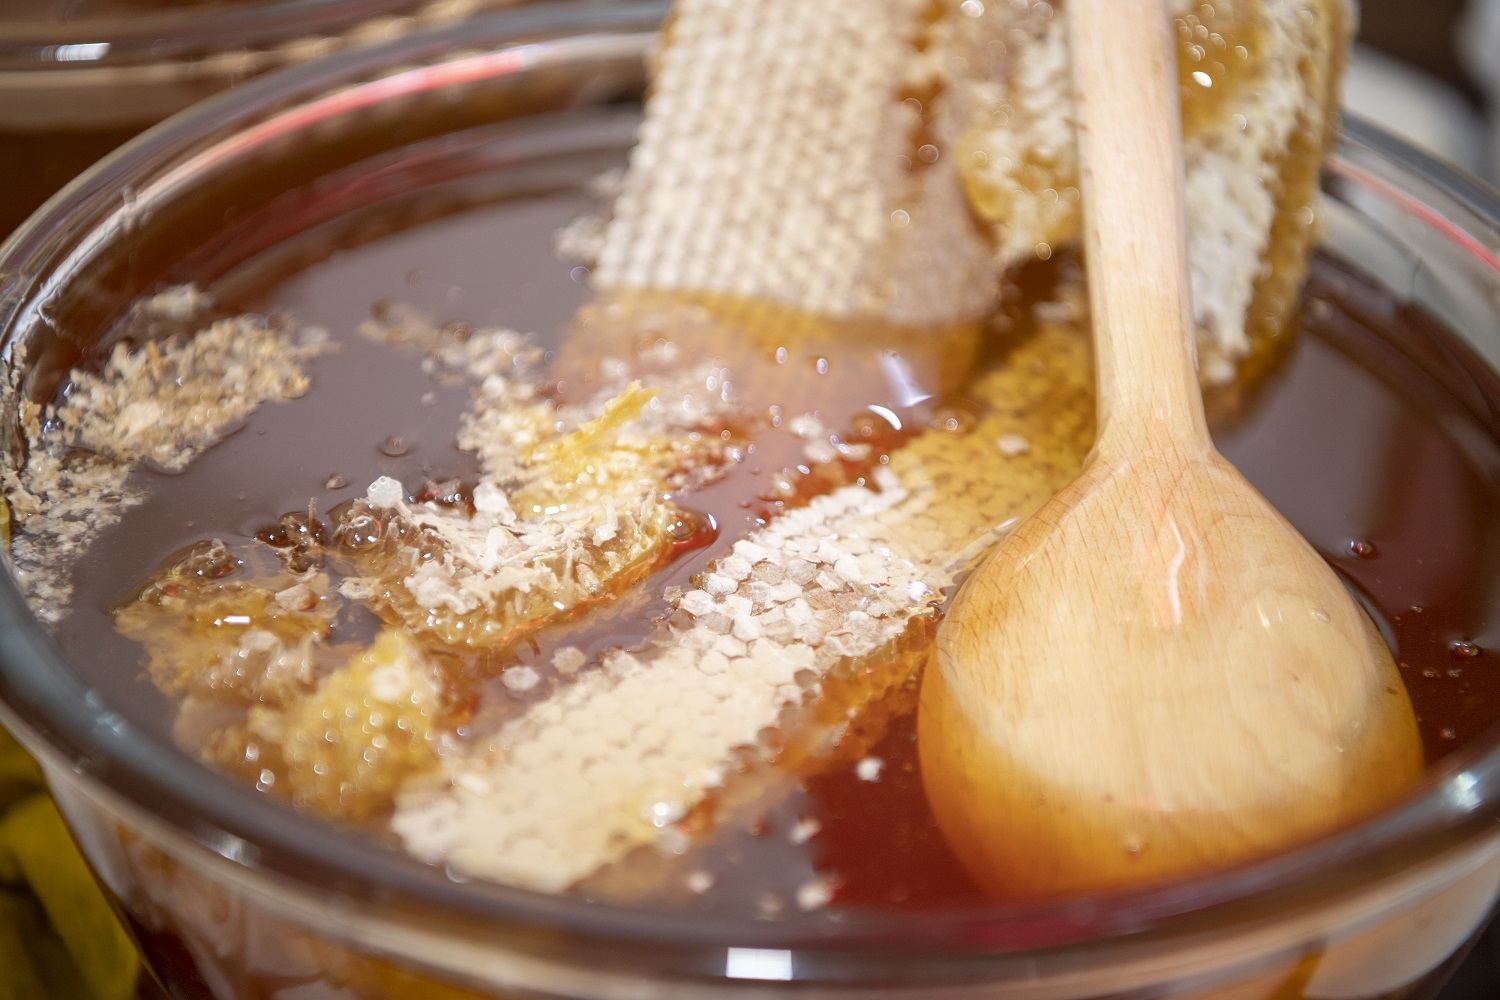 Georgia boosts its honey exports